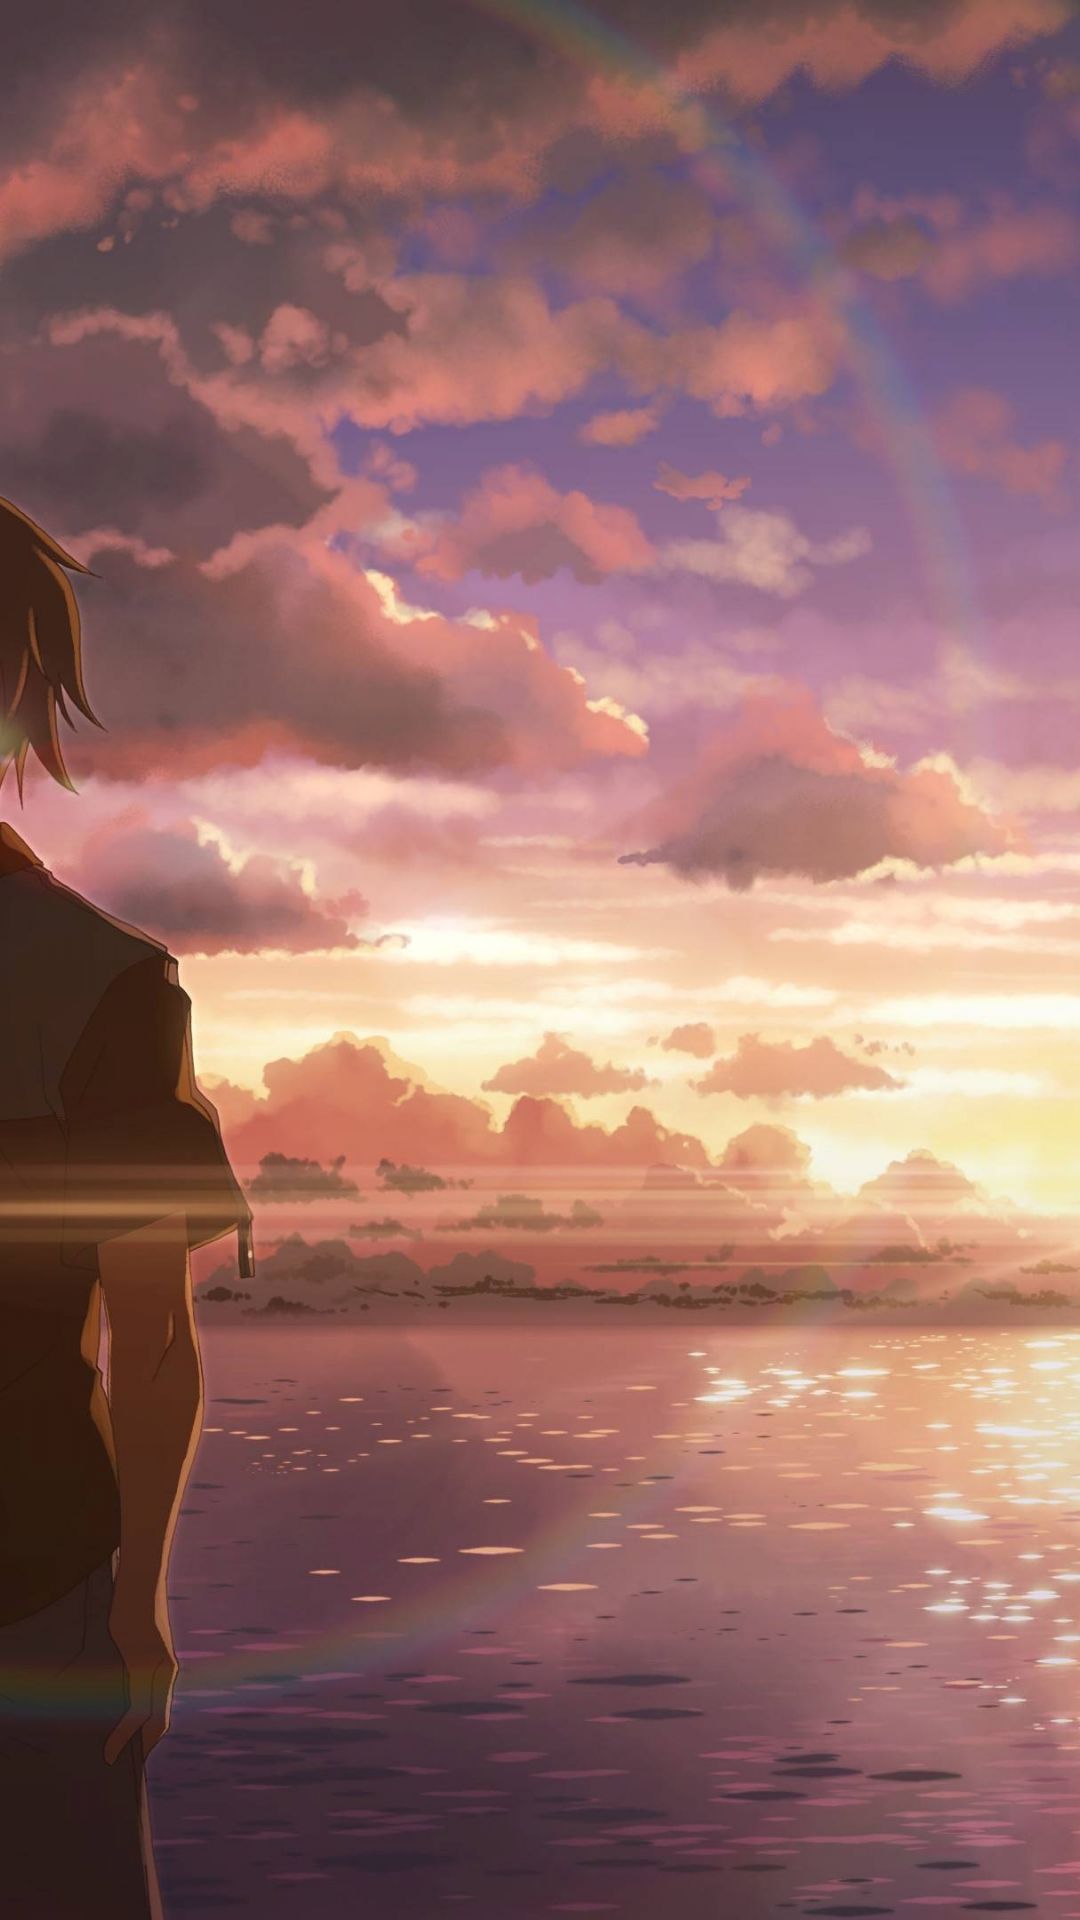 anime wallpaper iphone,himmel,horizont,wolke,meer,ruhe